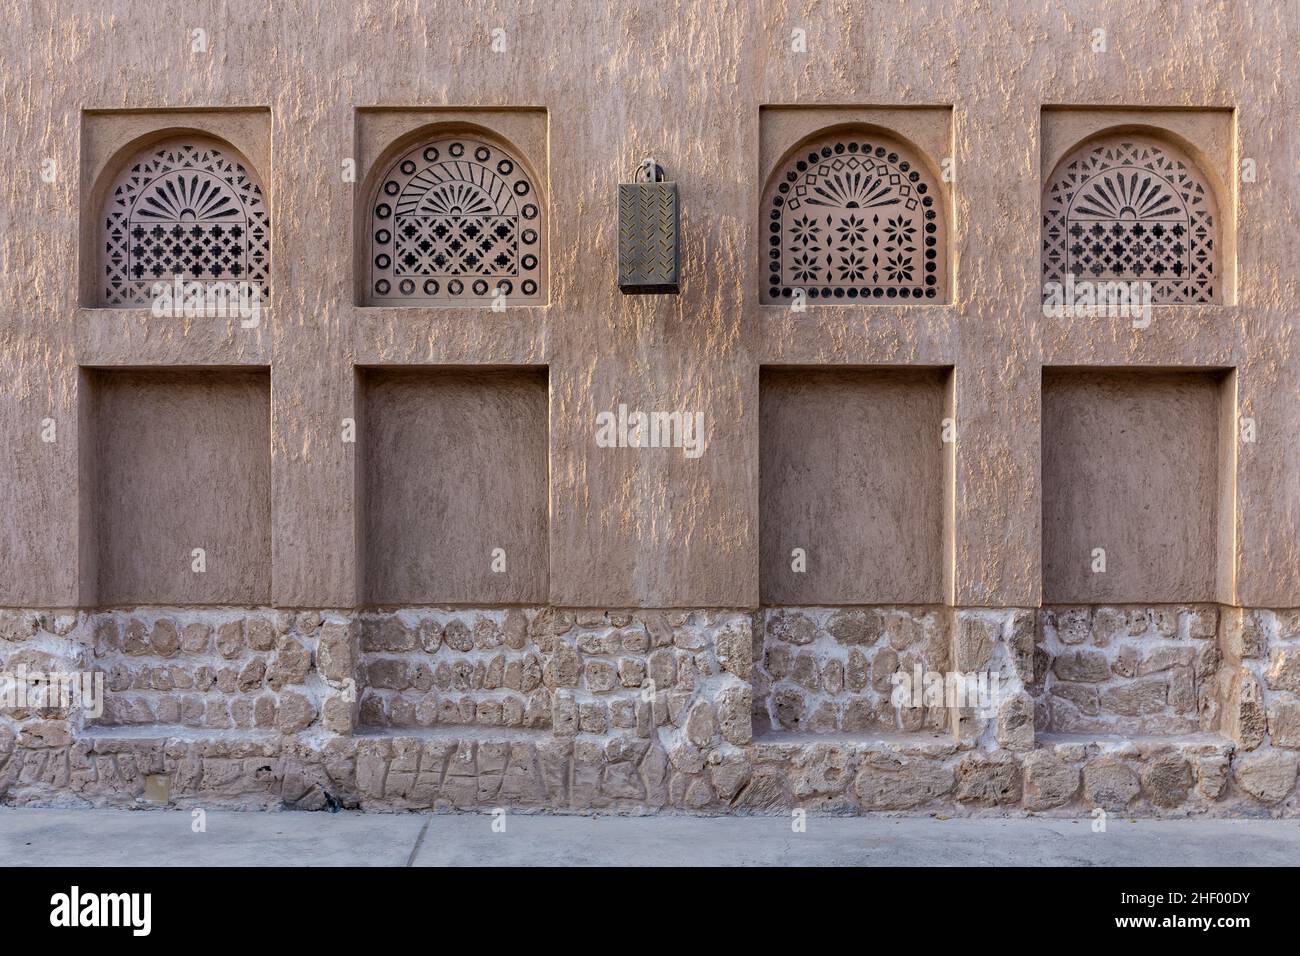 Arabic style window portals in stone wall with ornaments, traditional arabic architecture, Al Fahidi, Dubai, United Arab Emirates. Stock Photo